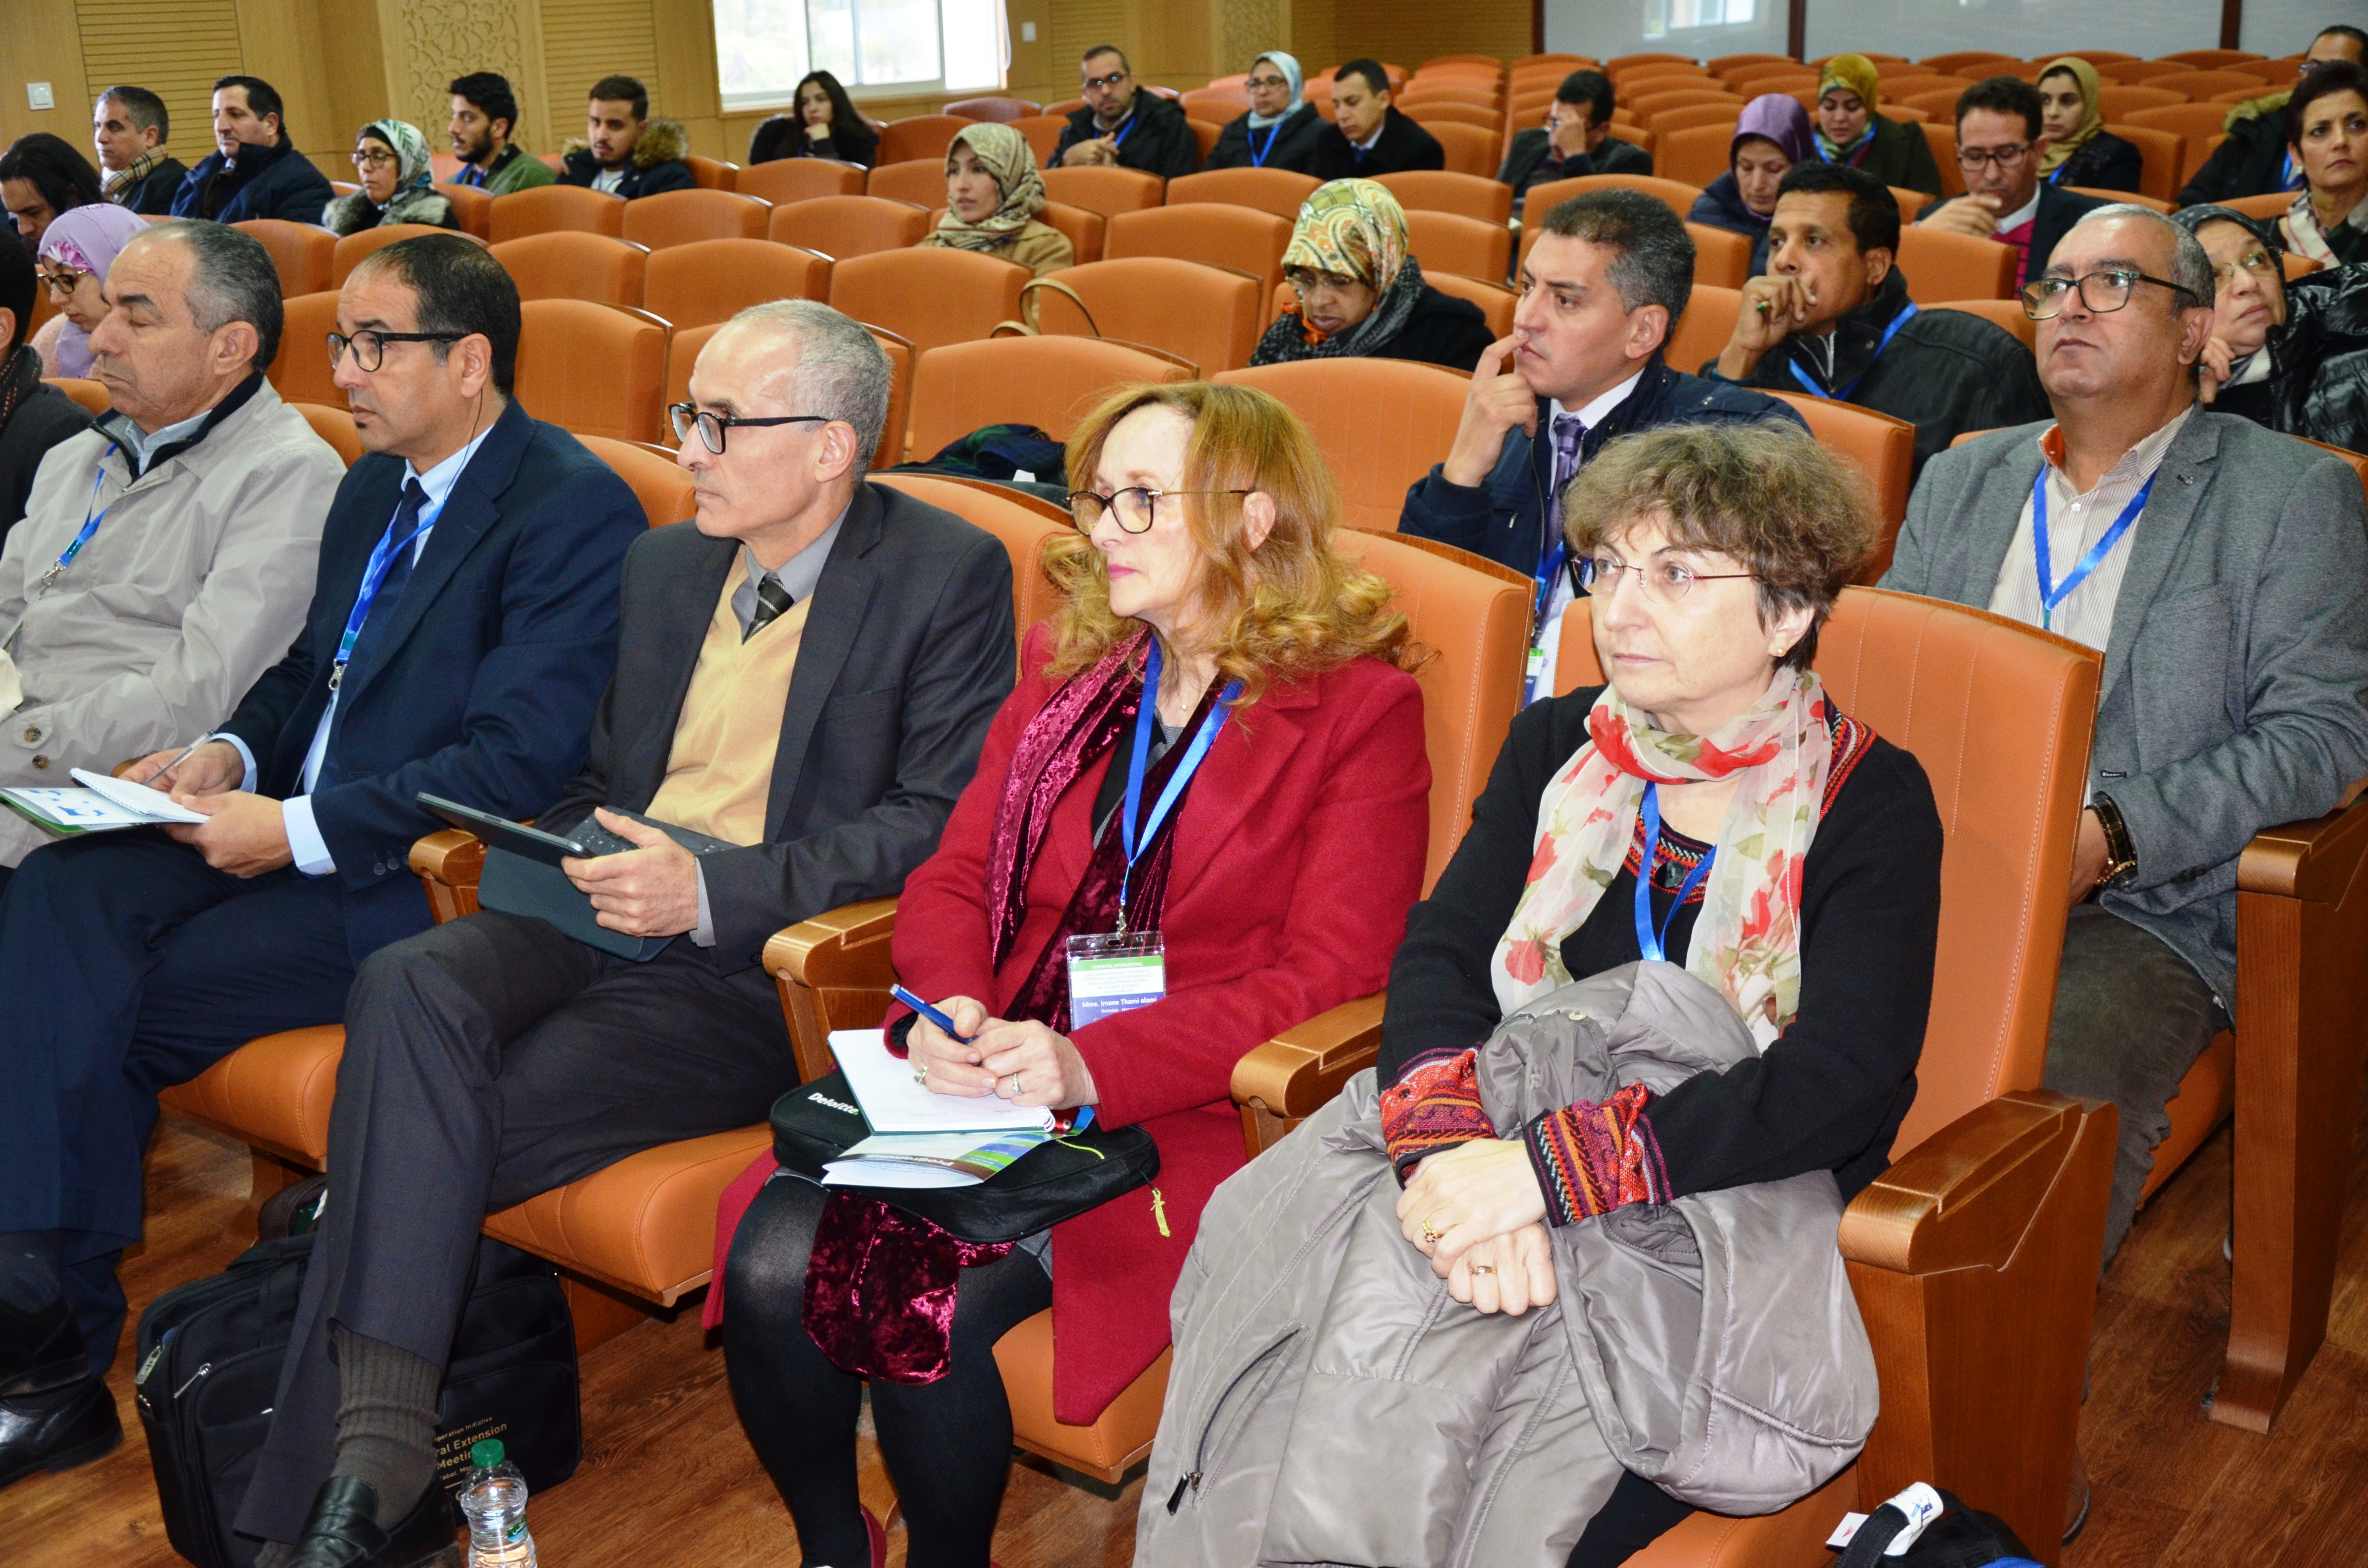 




Séminaire sur la cryoconservation des ressources génétiques animales, Rabat El guich, 20 Janvier 2020


